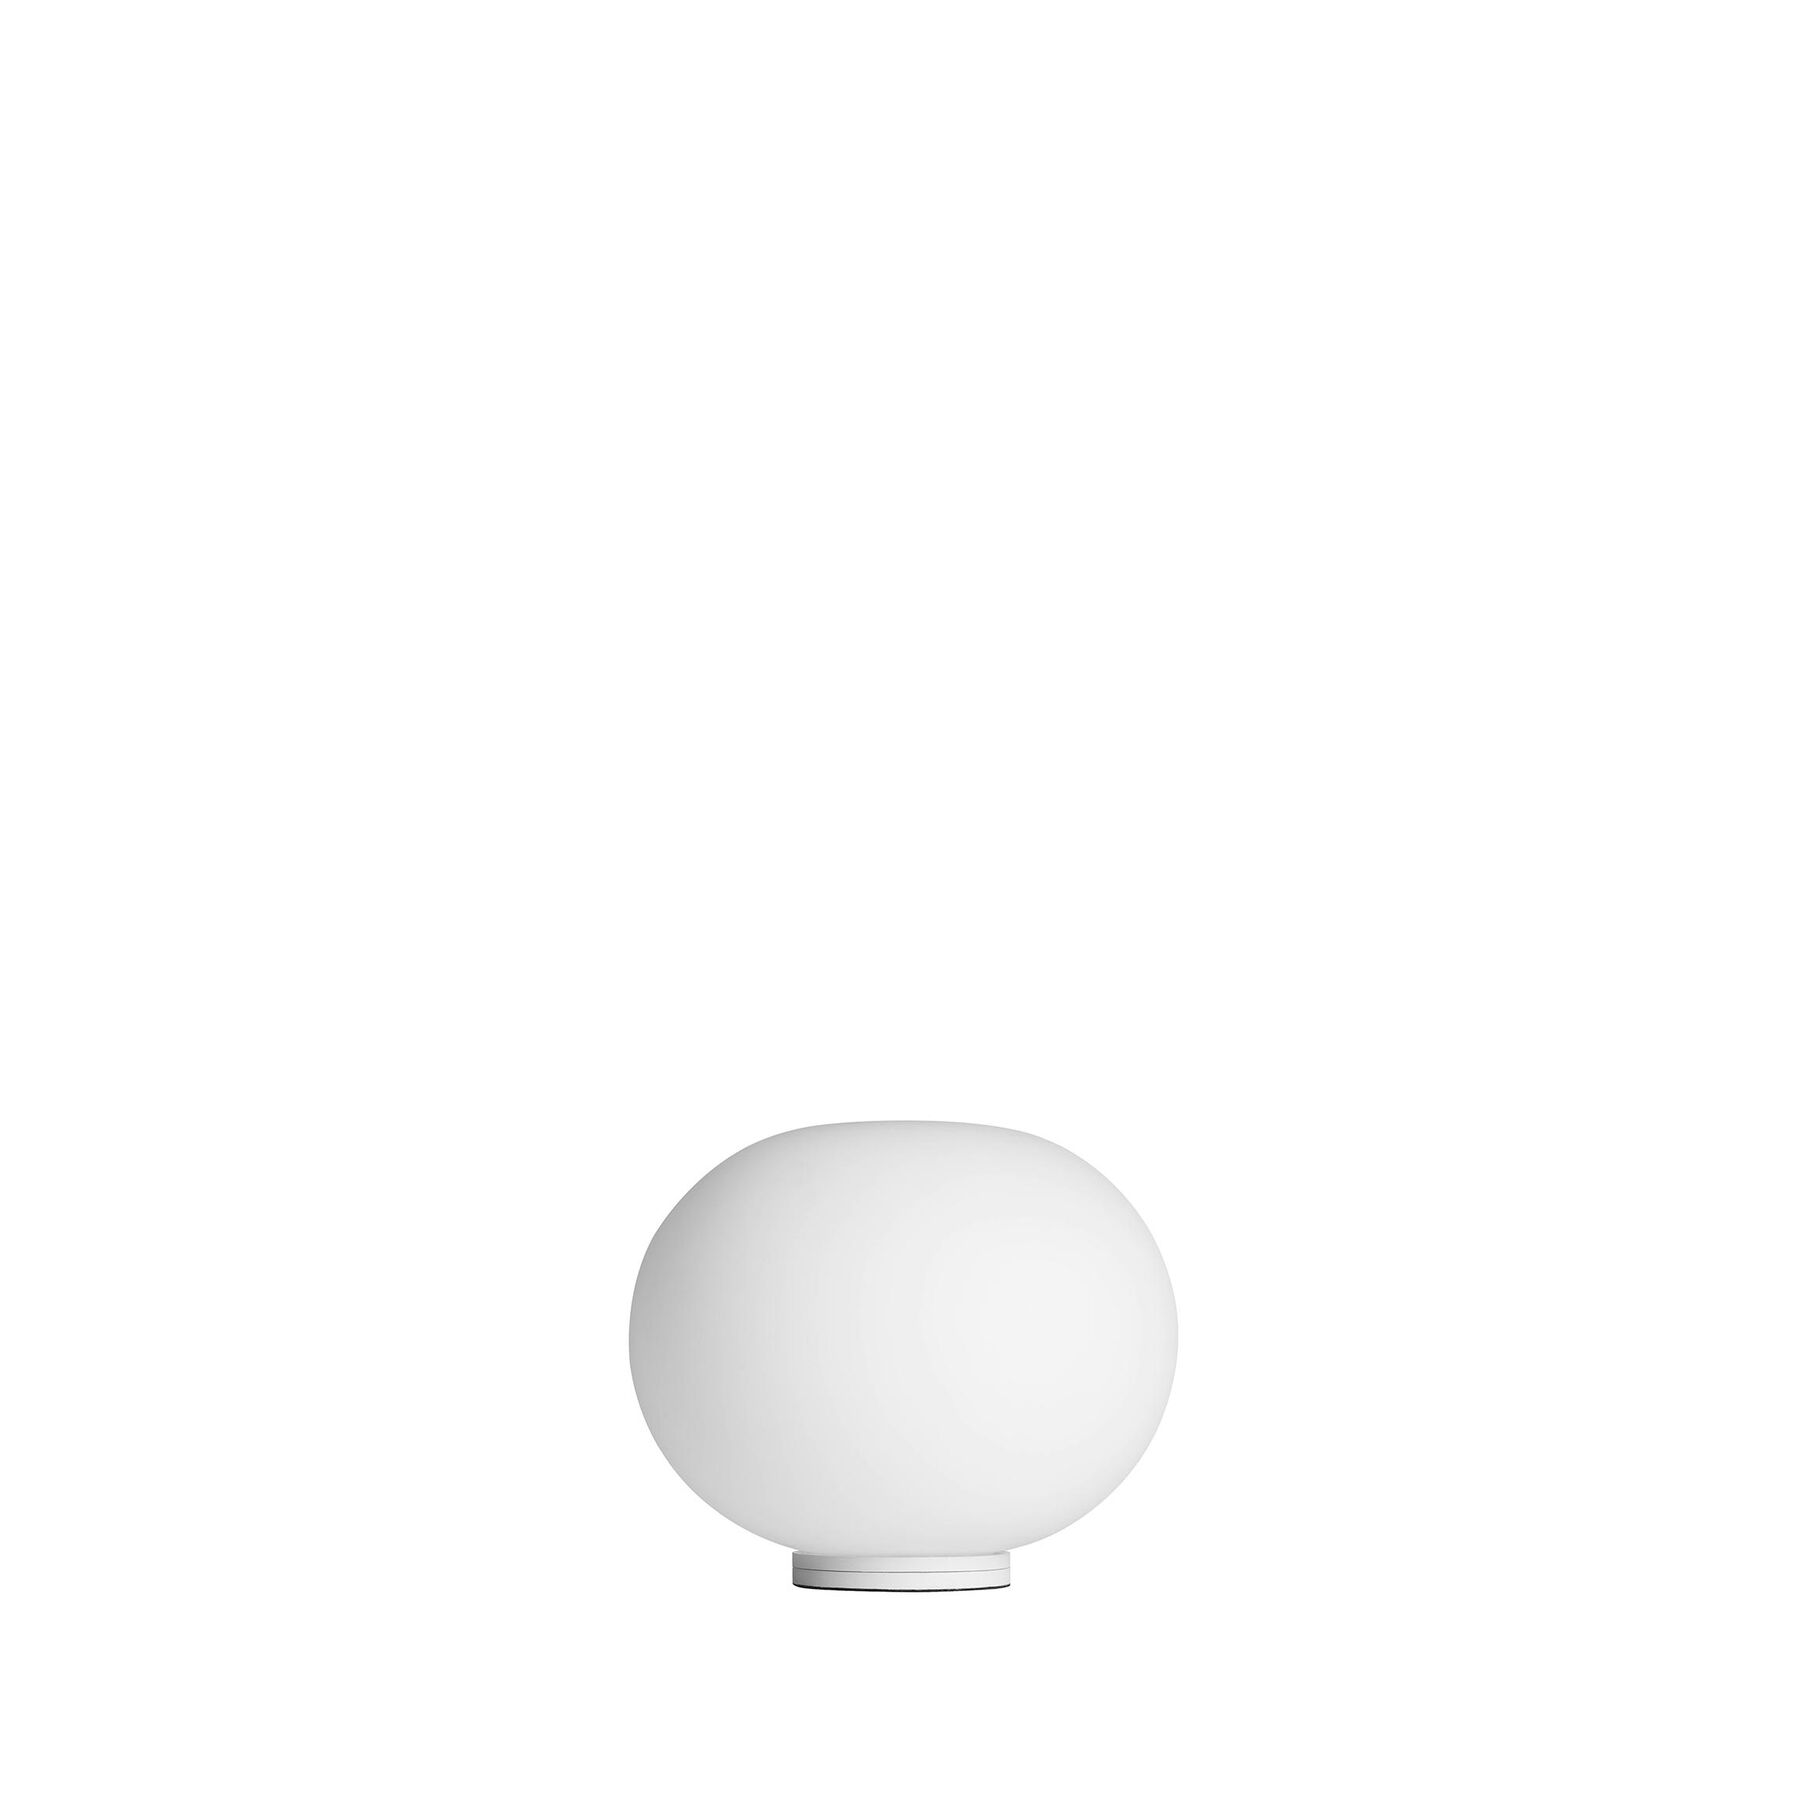 Купить Настольная лампа Glo-Ball Basic Zero Dimmer в интернет-магазине roooms.ru